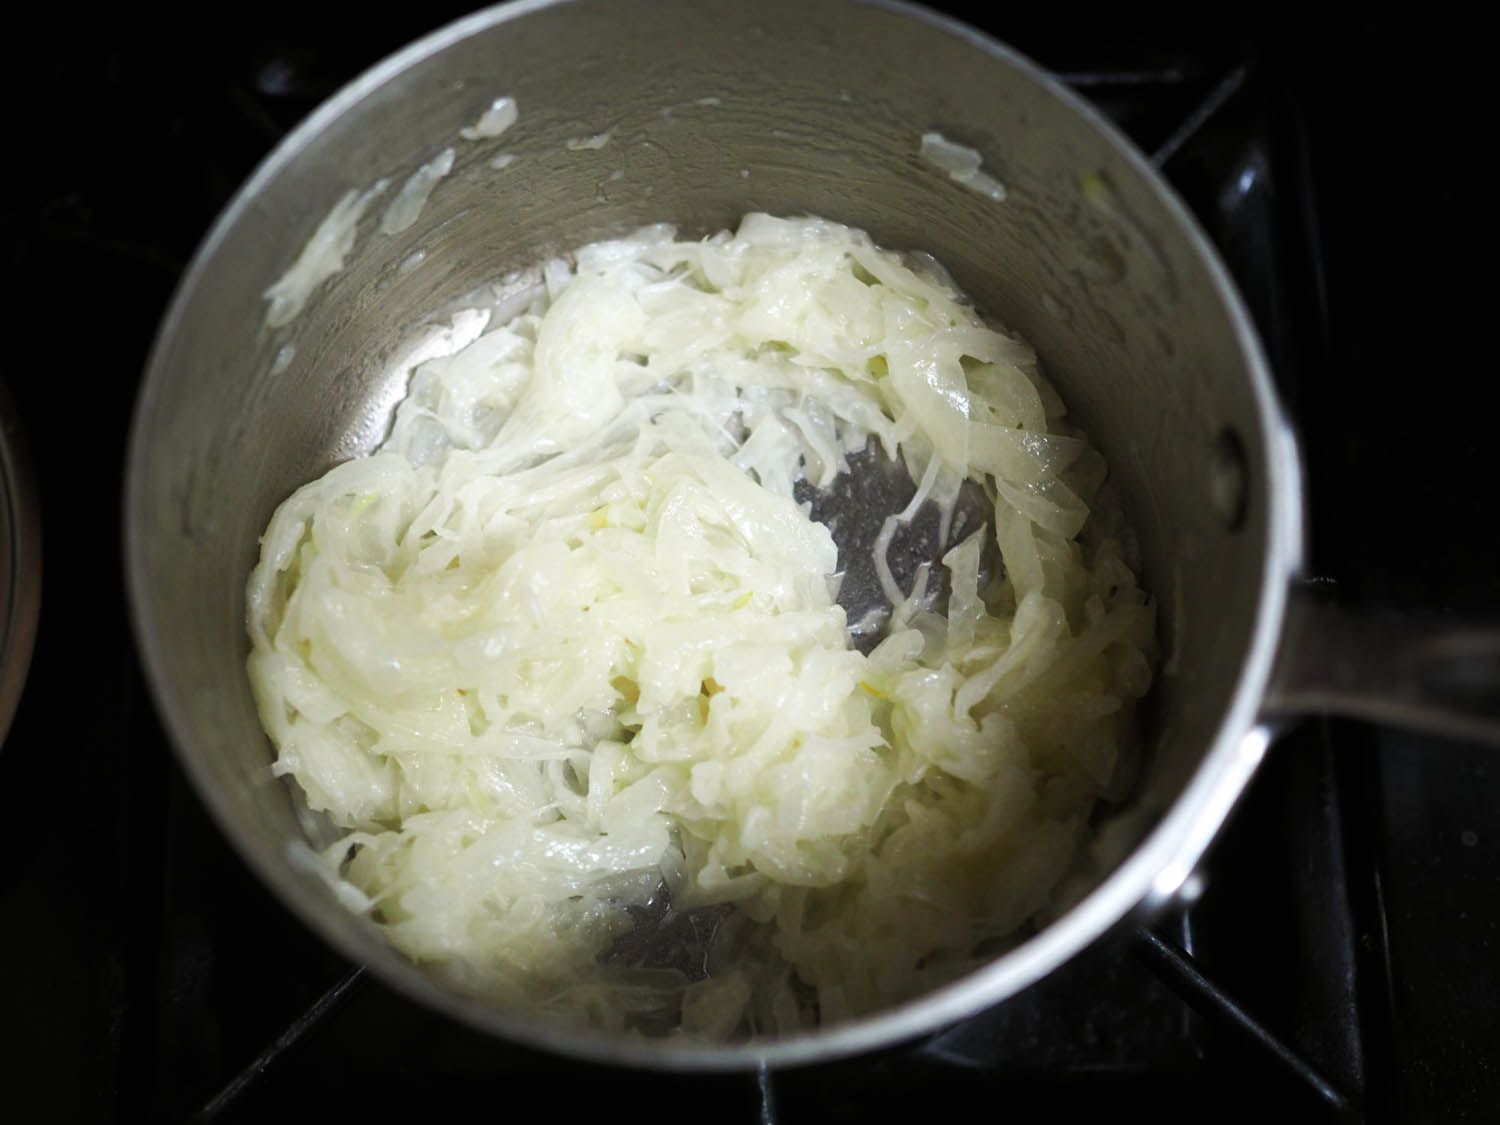 洋葱,脸色煞白,排干水,倒在平底锅里,展示了他们苍白的颜色。